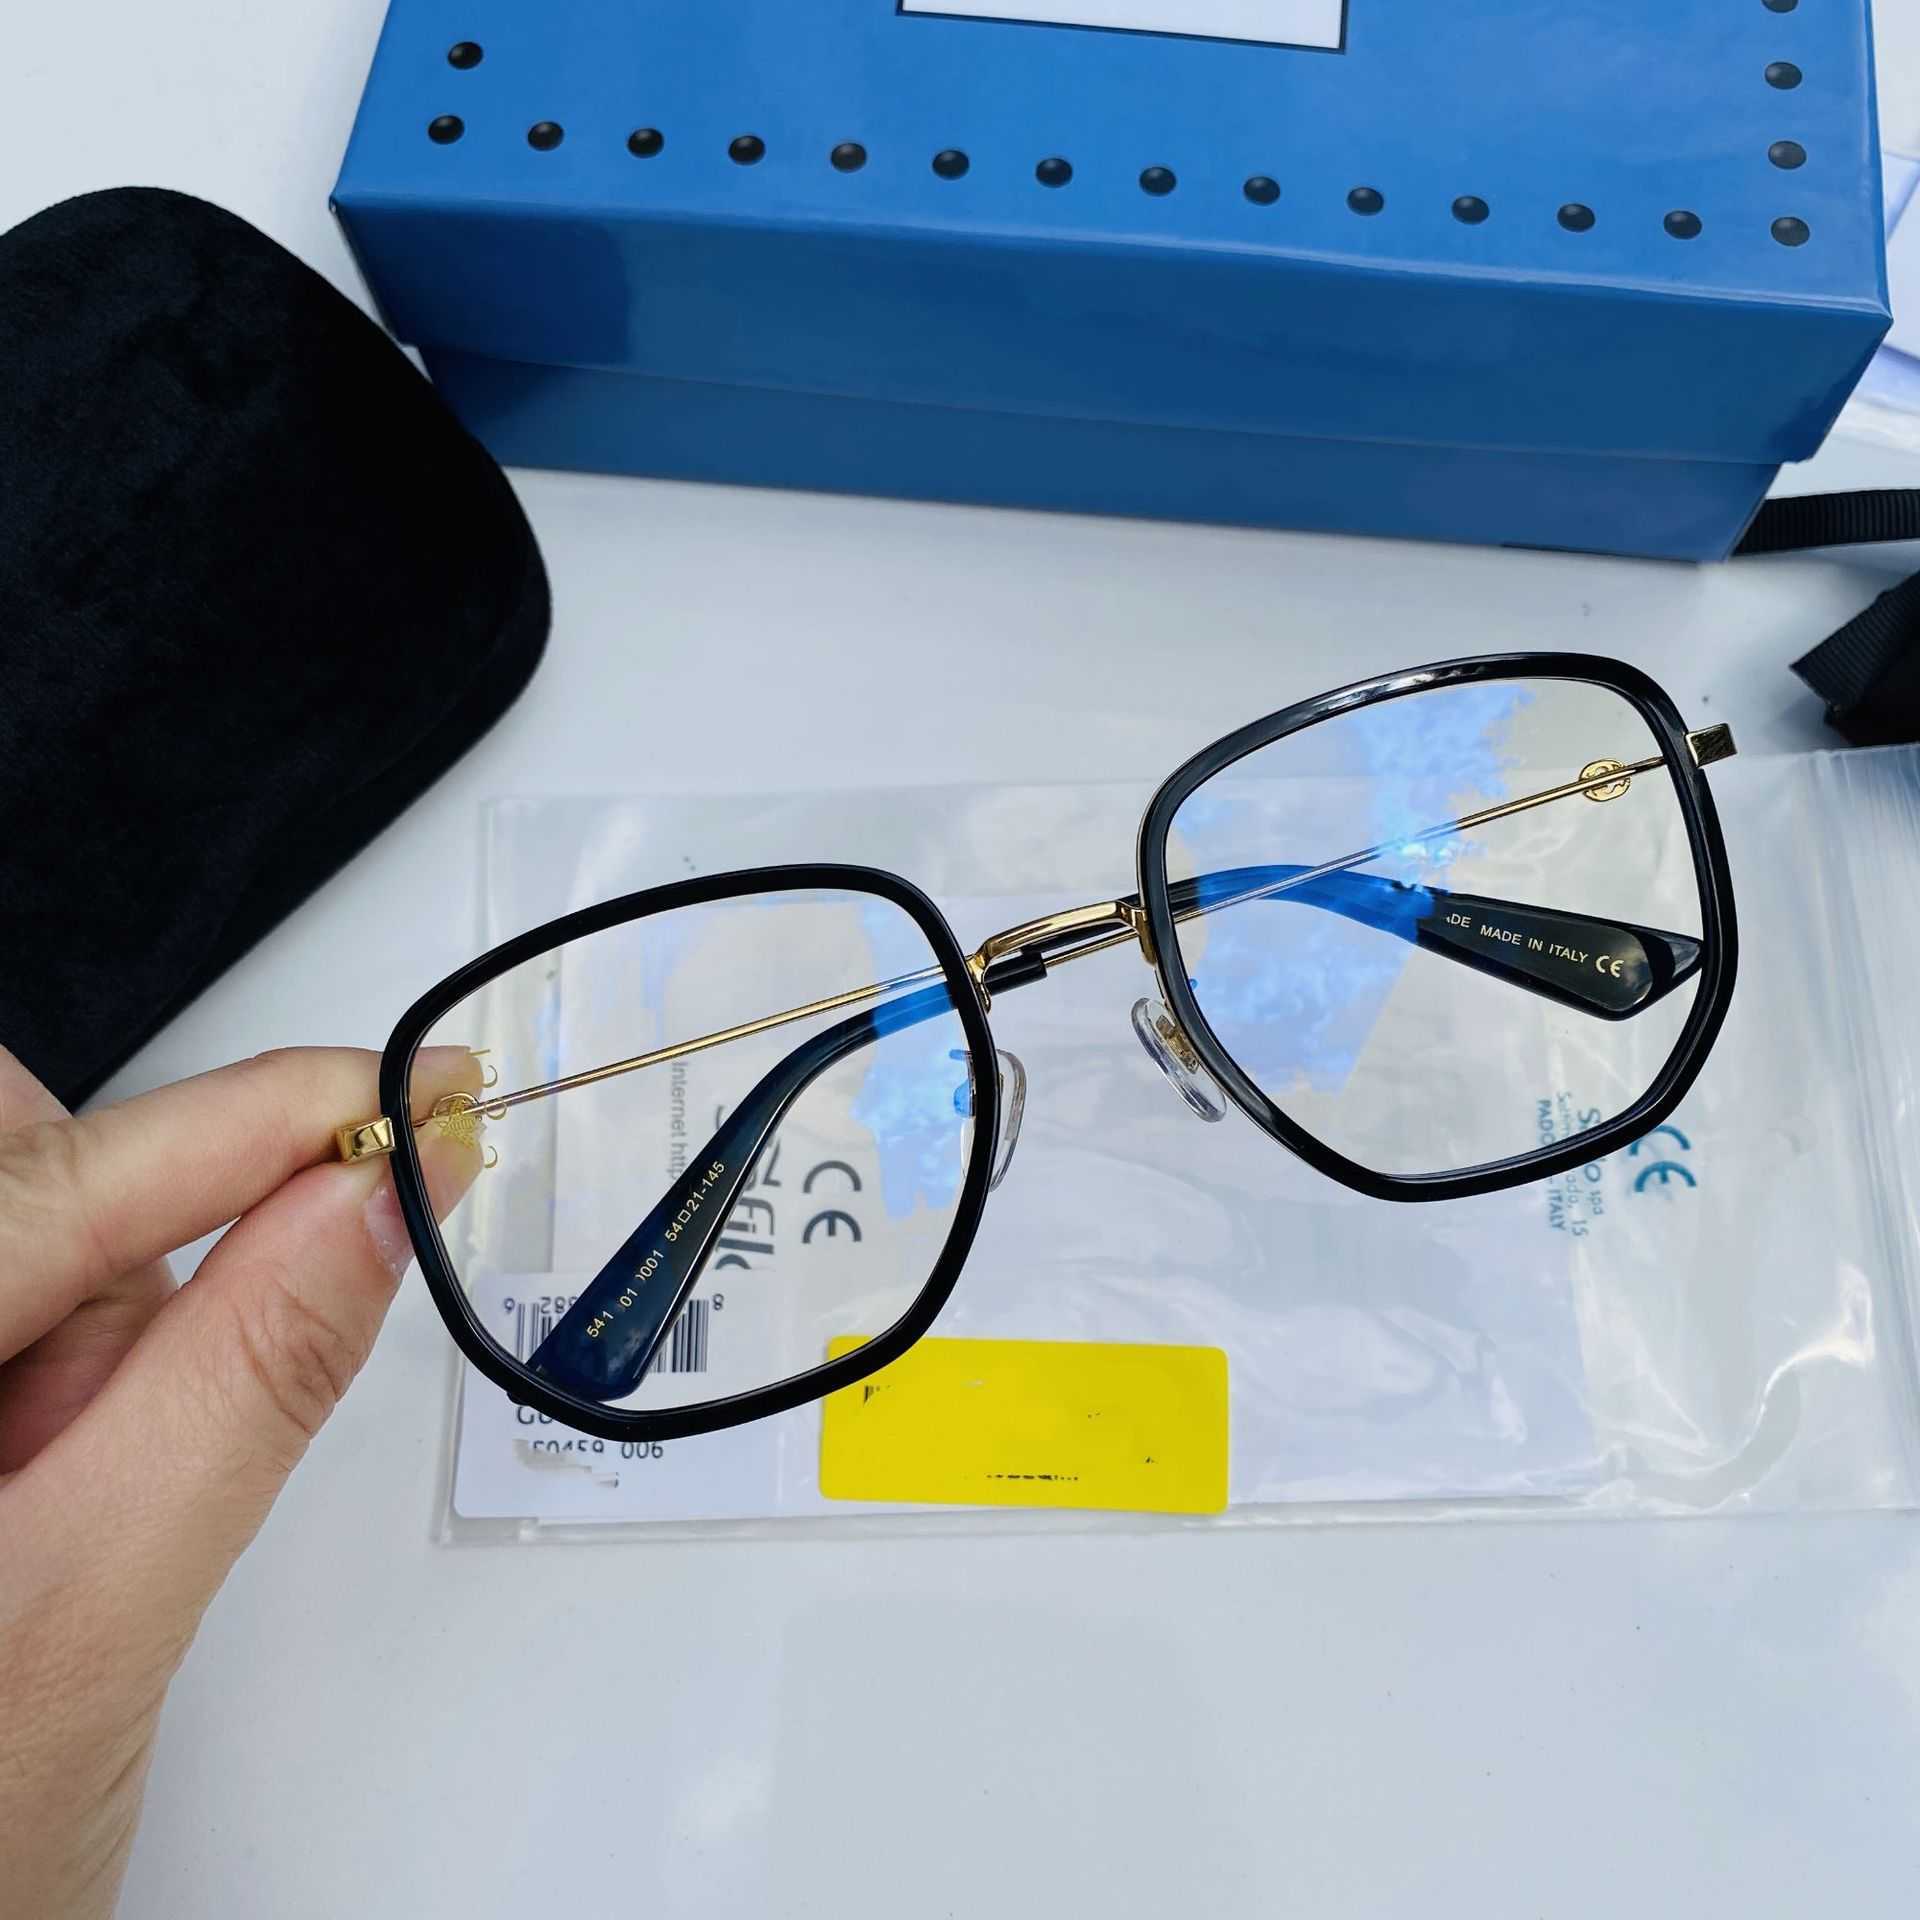 2023 Nowe luksusowe okulary przeciwsłoneczne Nowy płaski obiektyw GG0459 ma nieregularną ramę i jest popularny. Zwykła twarz może sparować z krótkowzroczną małą pszczołą